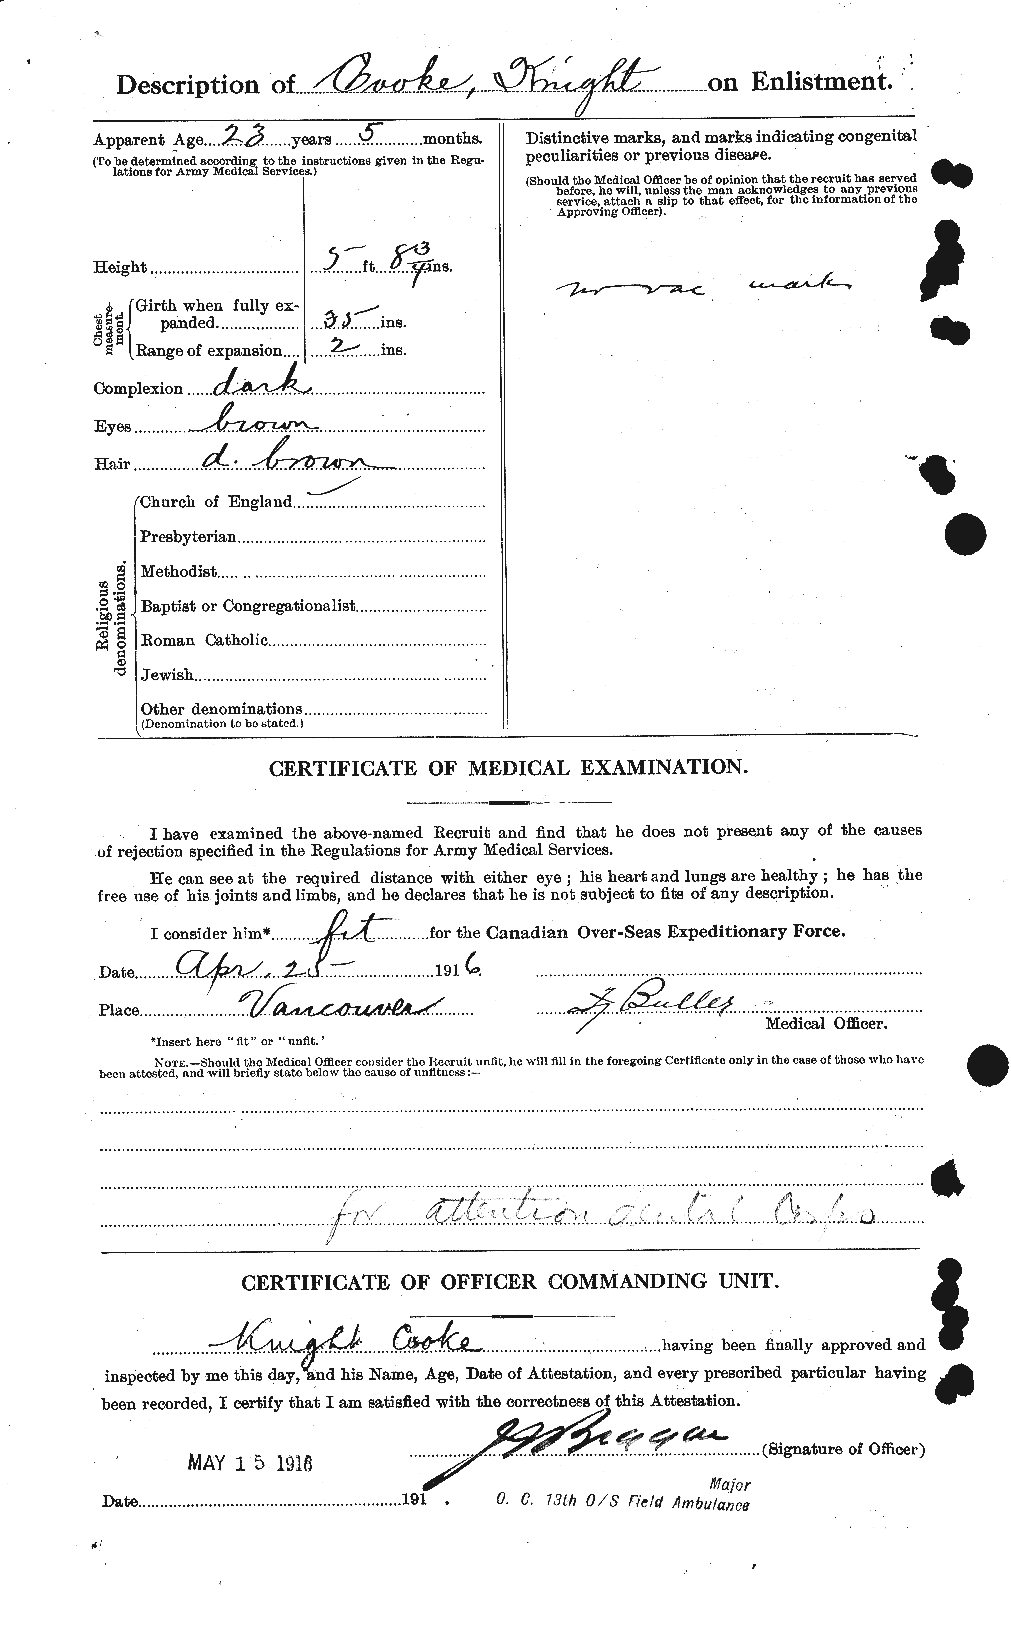 Dossiers du Personnel de la Première Guerre mondiale - CEC 075809b